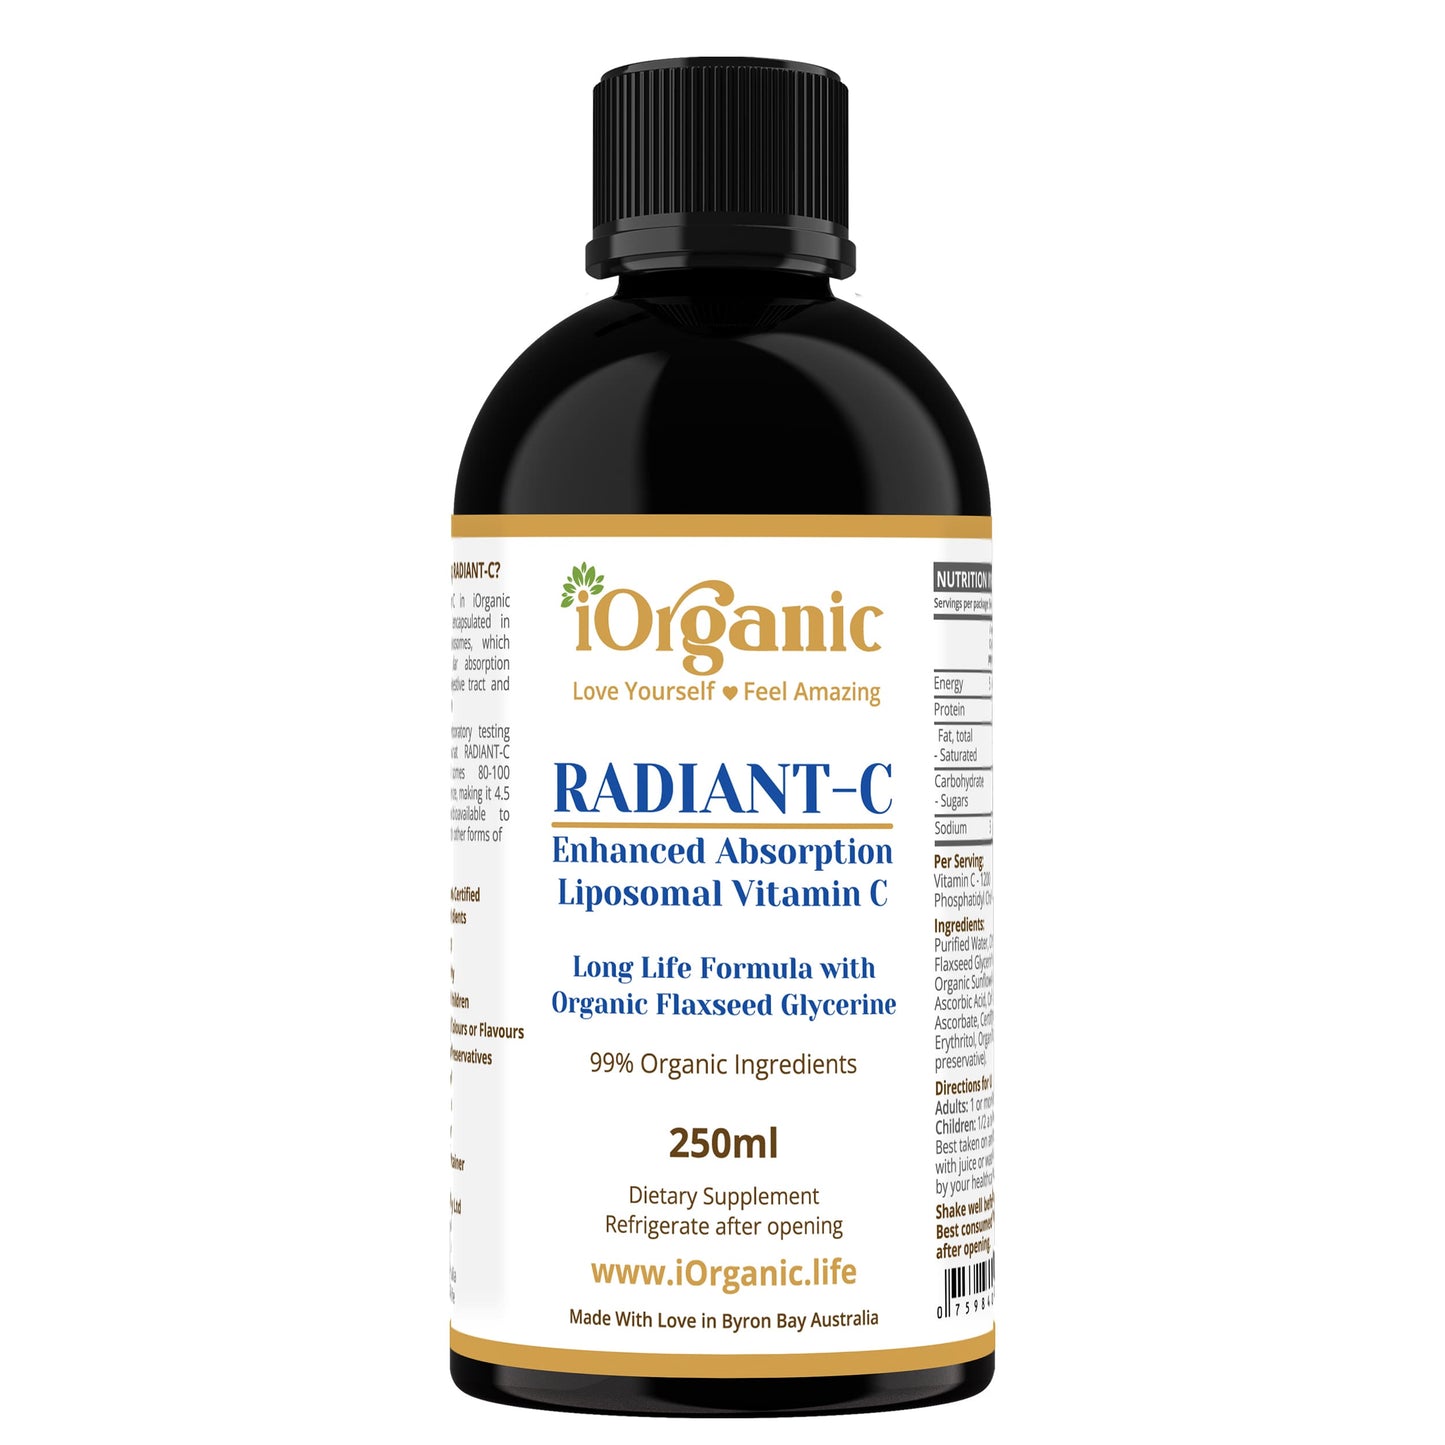 Radiant-C Liposomal Vitamin C